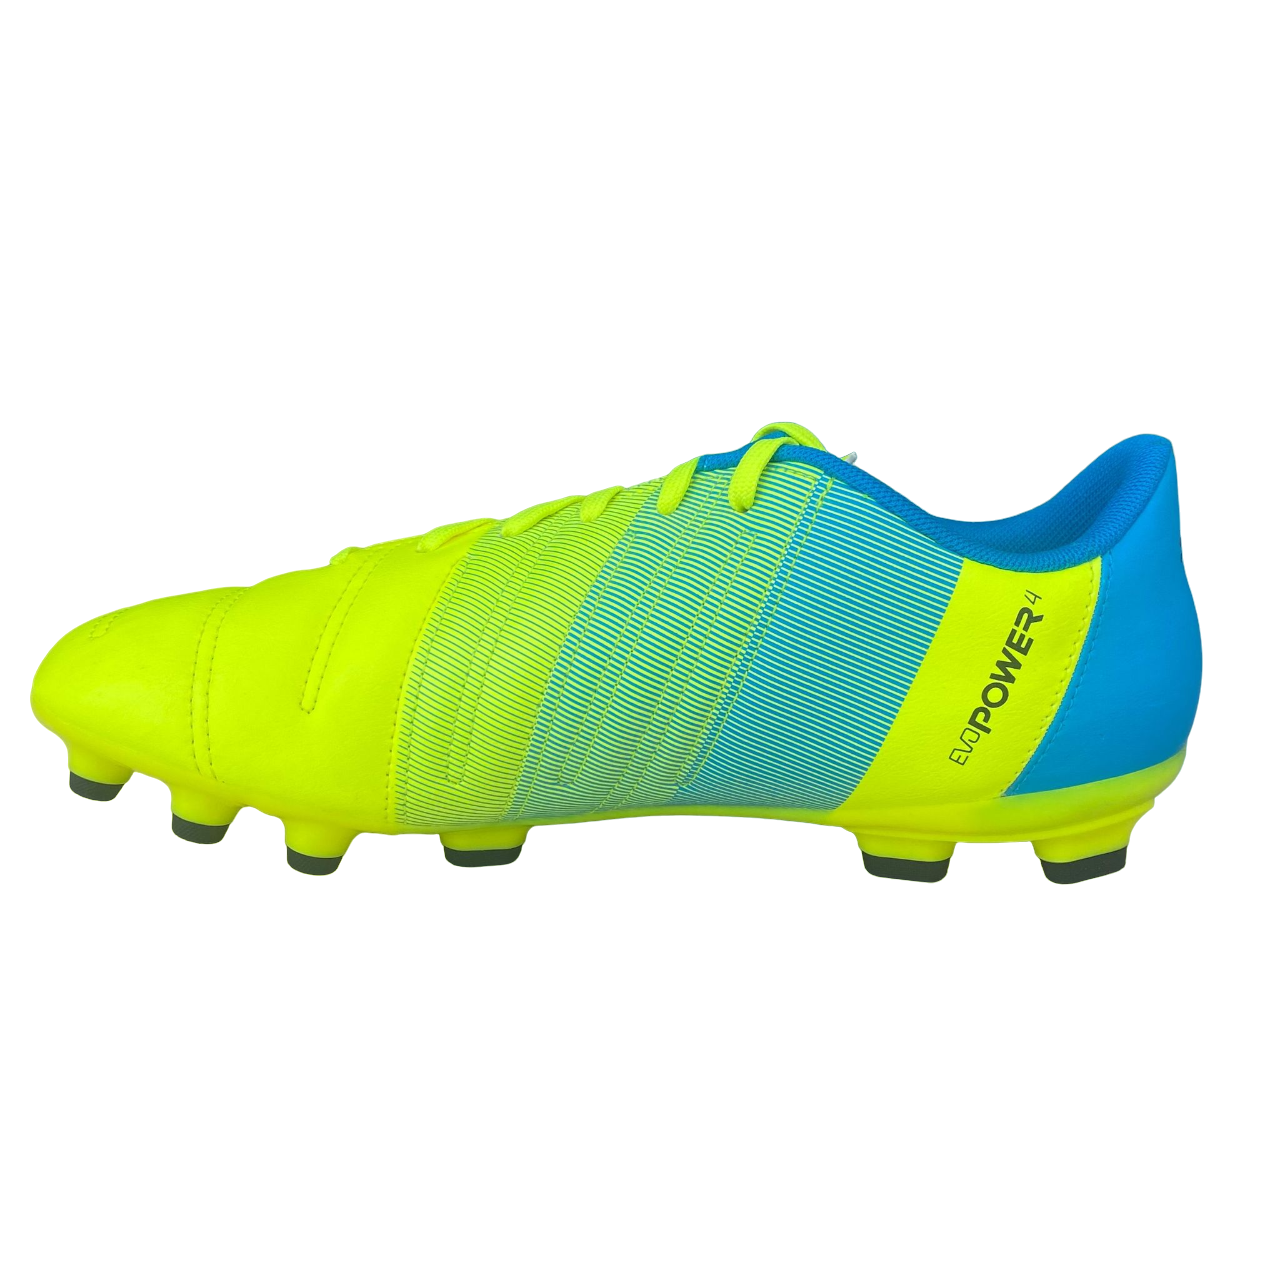 Puma scarpa da calcio da uomo evoPOWER 4.3 AG 103538 01 giallo-nero-antracite